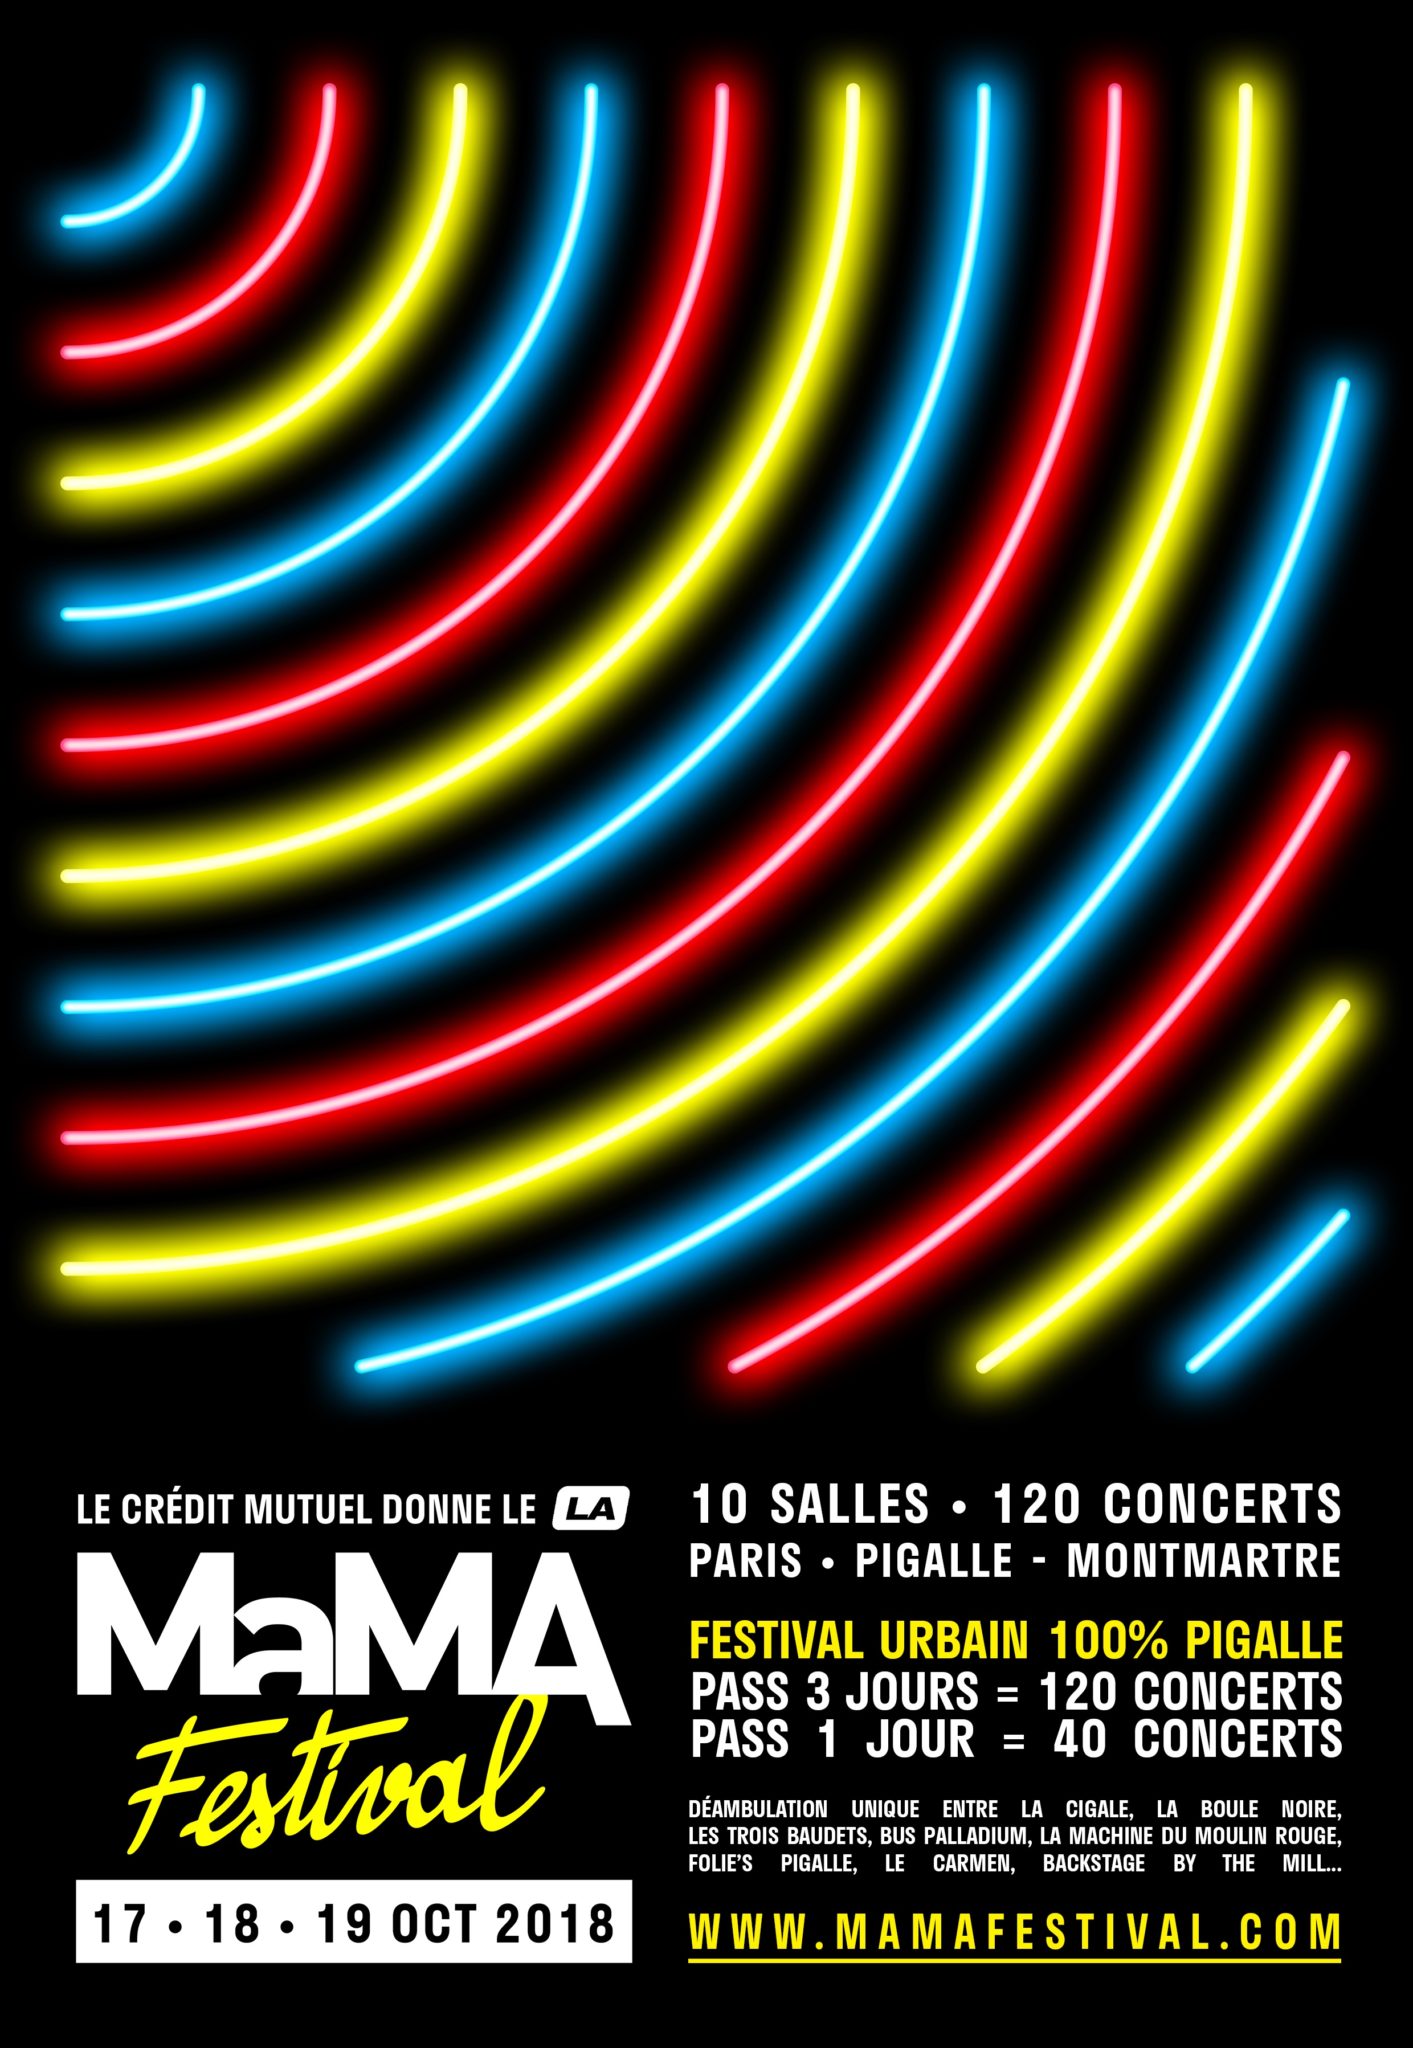 L'affiche du MaMA festival 2018 du 17 au 19 octobre 2018 à Paris